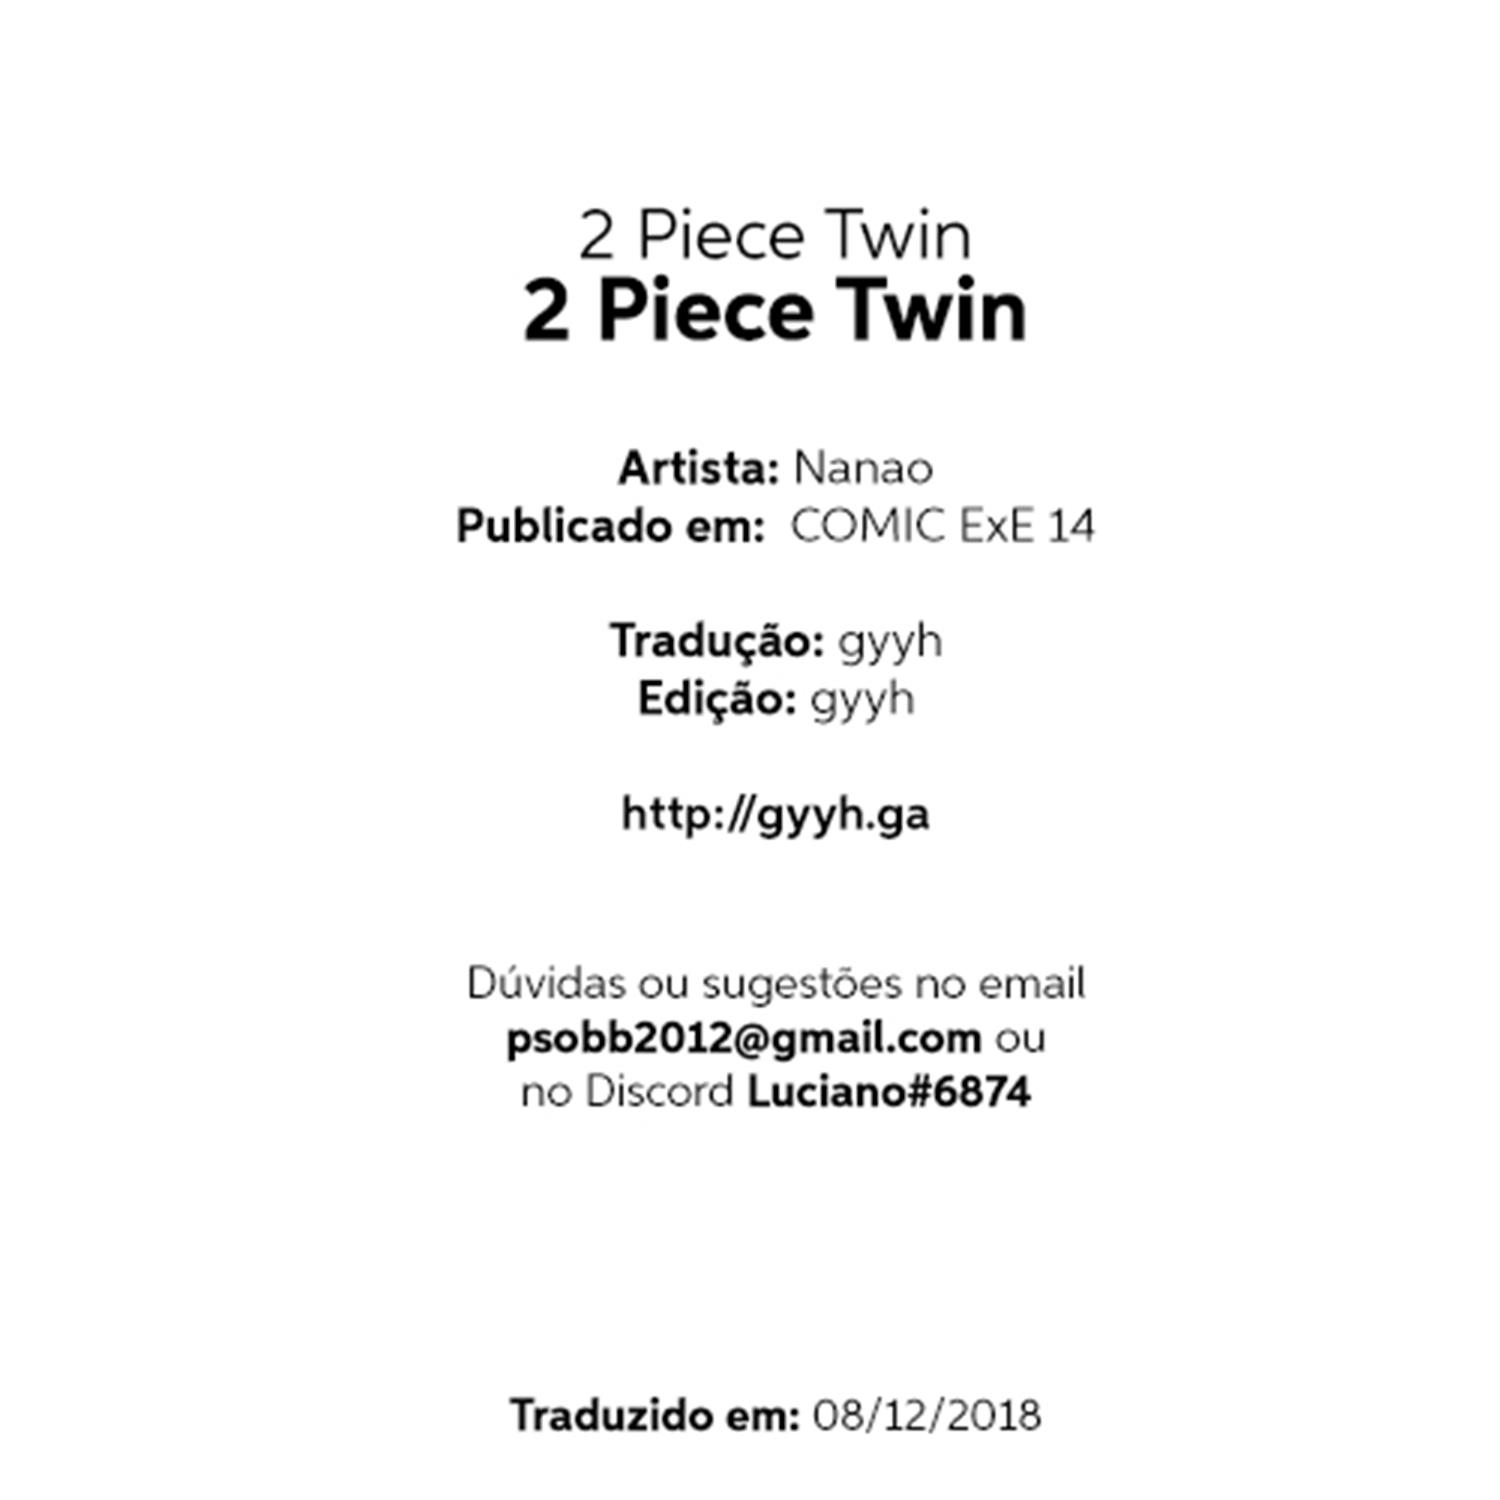 2 Piece Twin